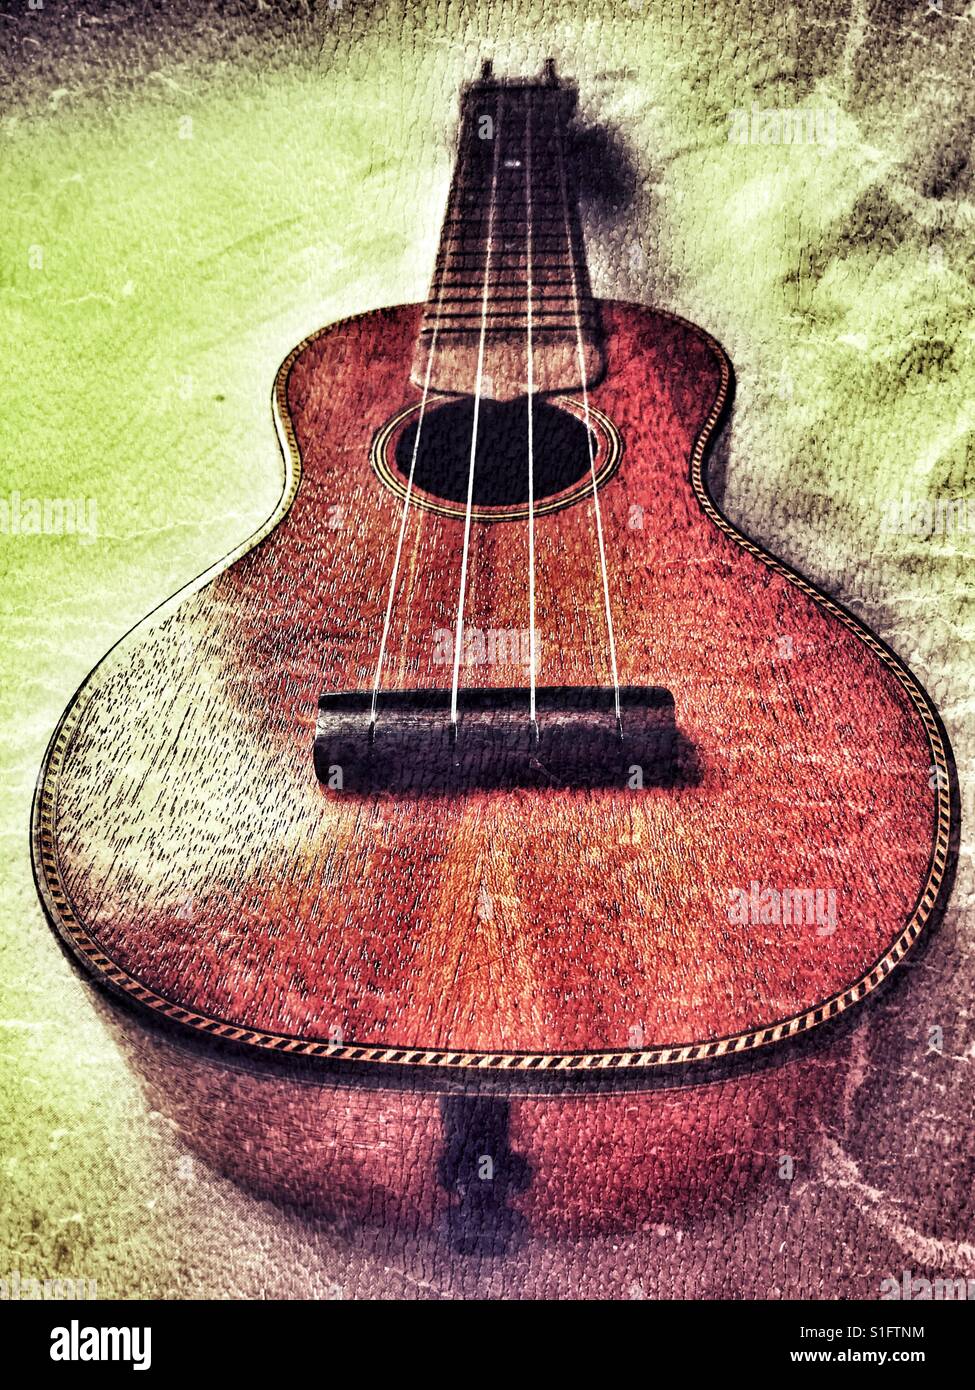 Wunderkammer soprano ukulele Stock Photo